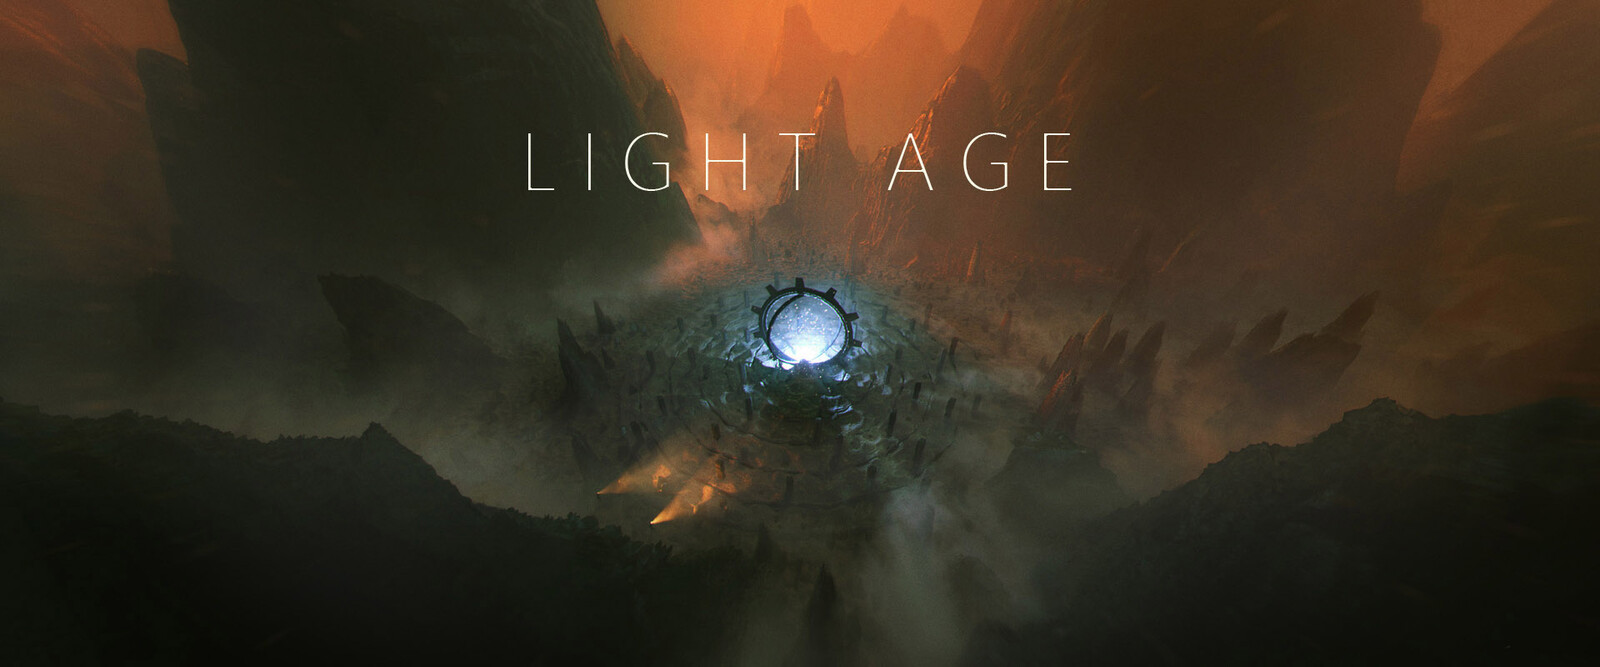 LIGHT AGE